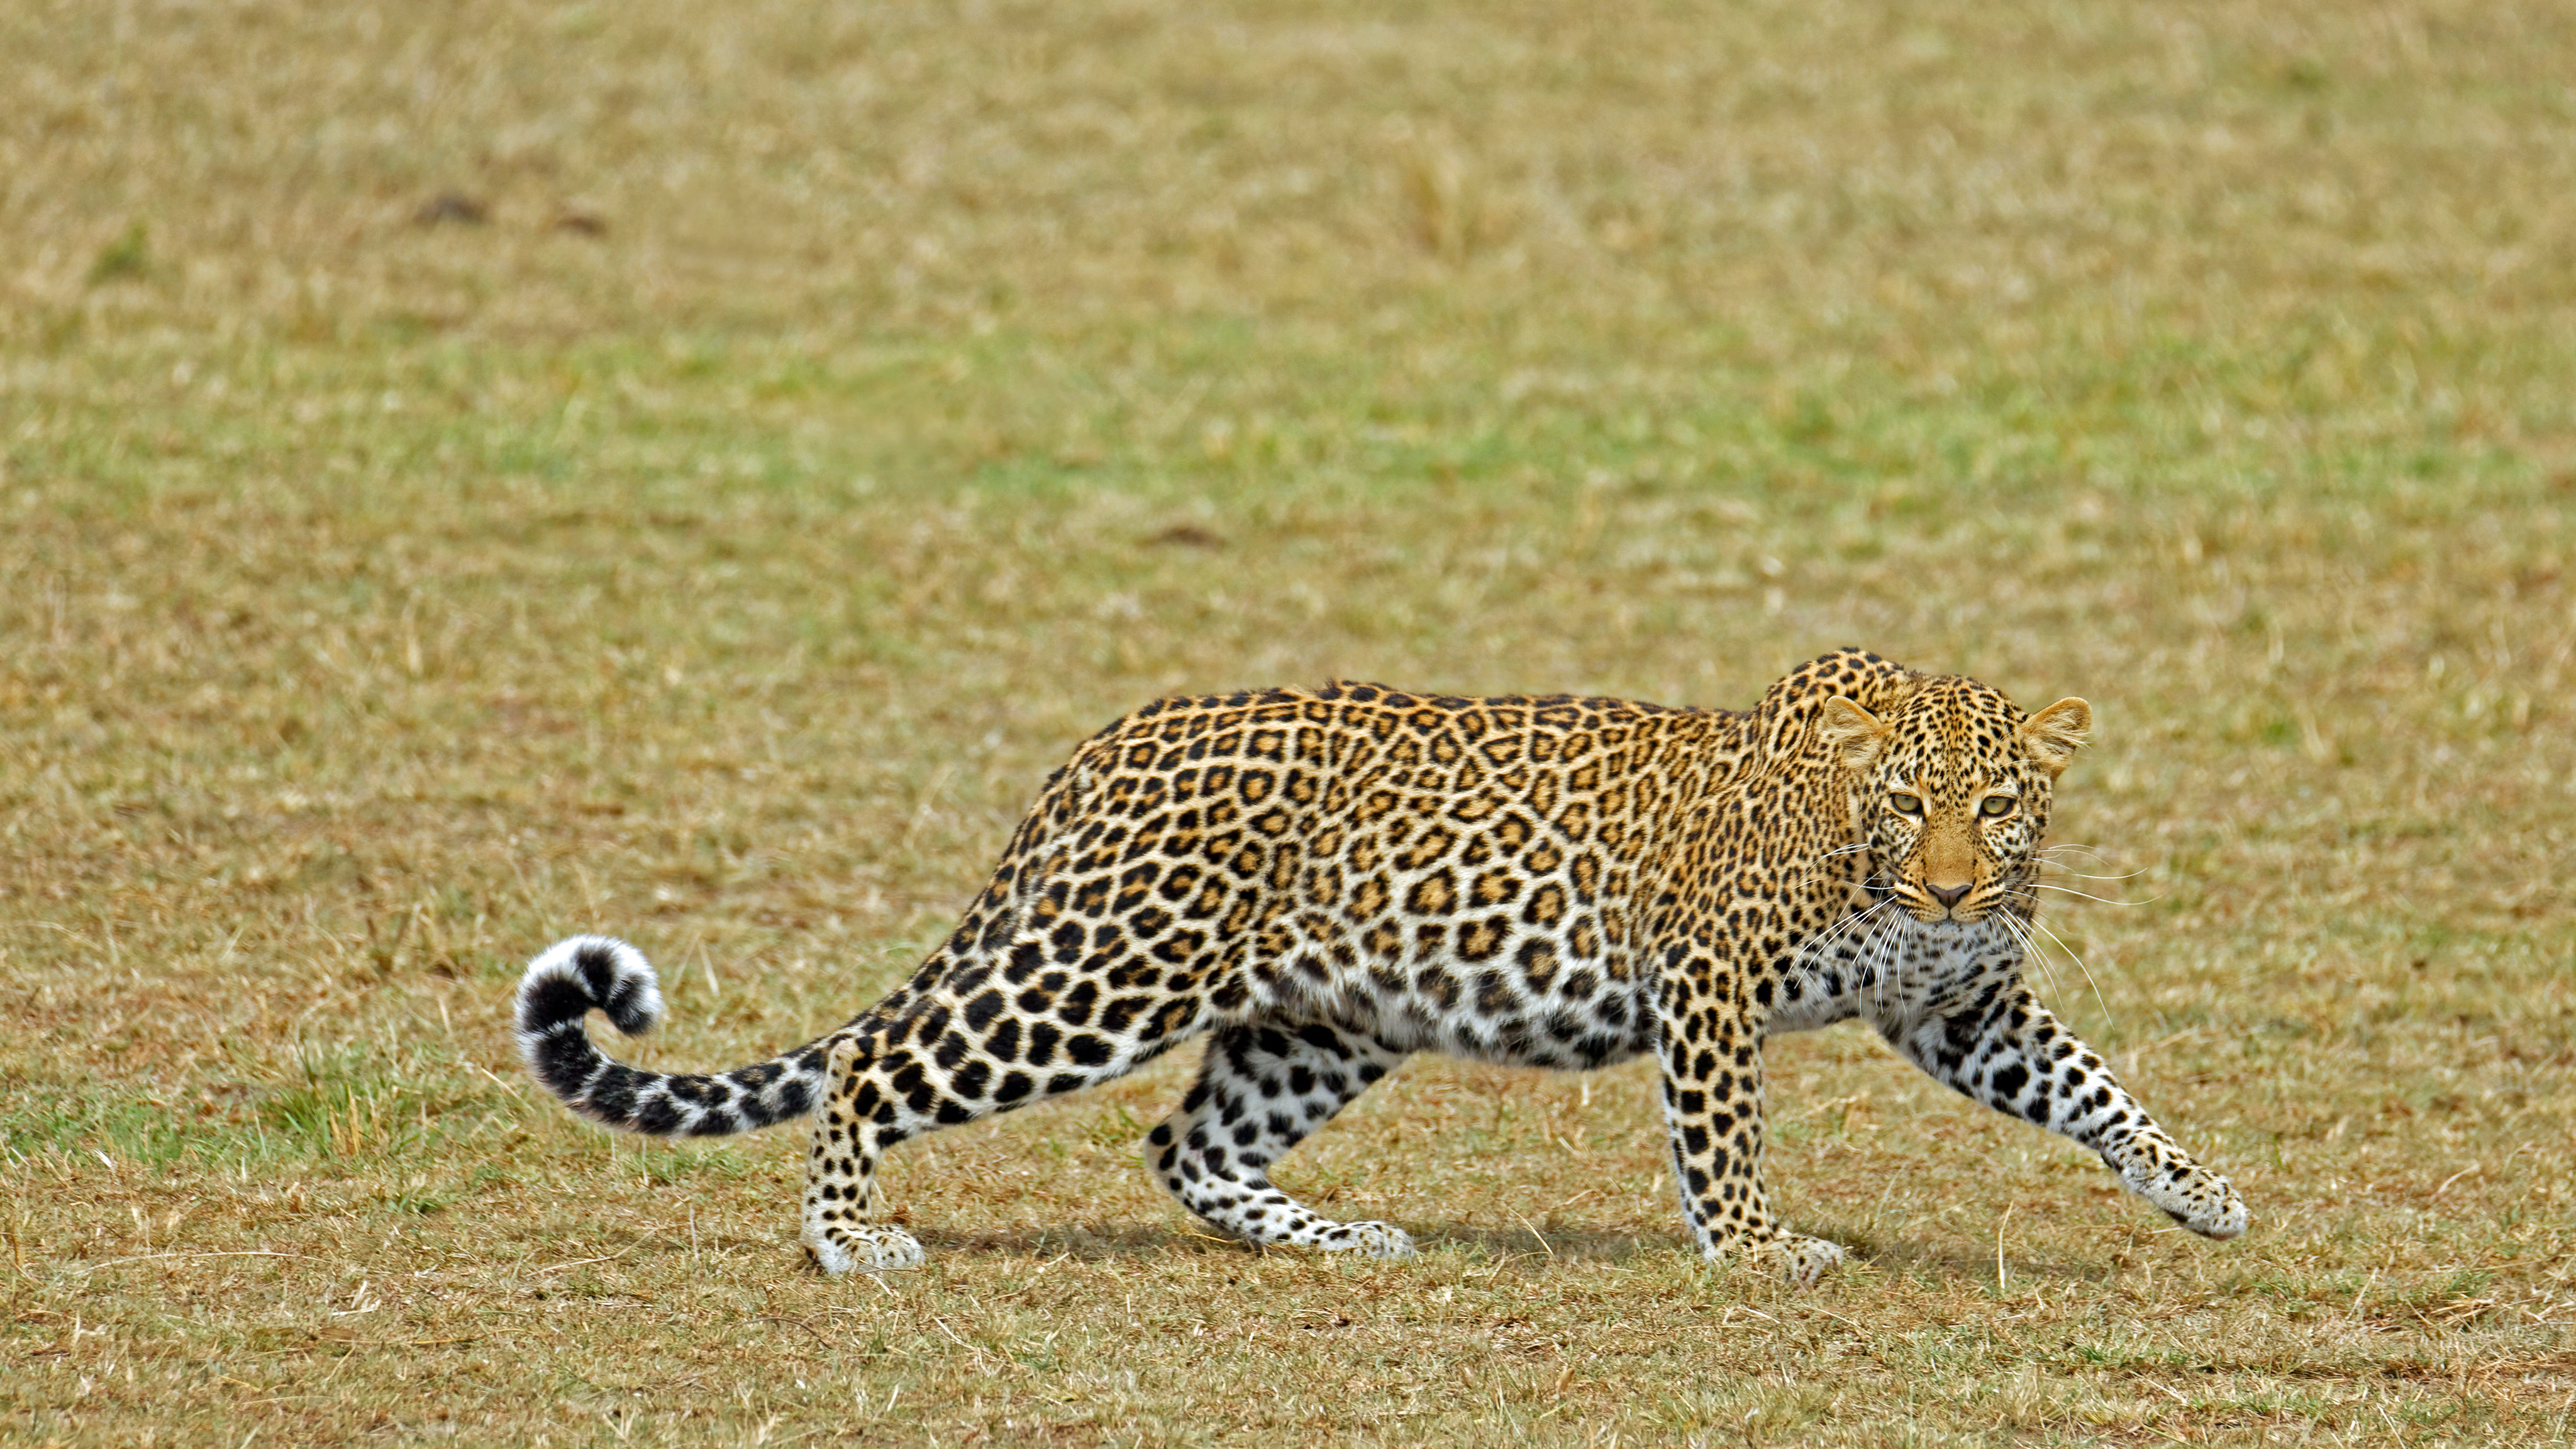 General 4096x2304 wildlife nature feline big cats mammals leopard